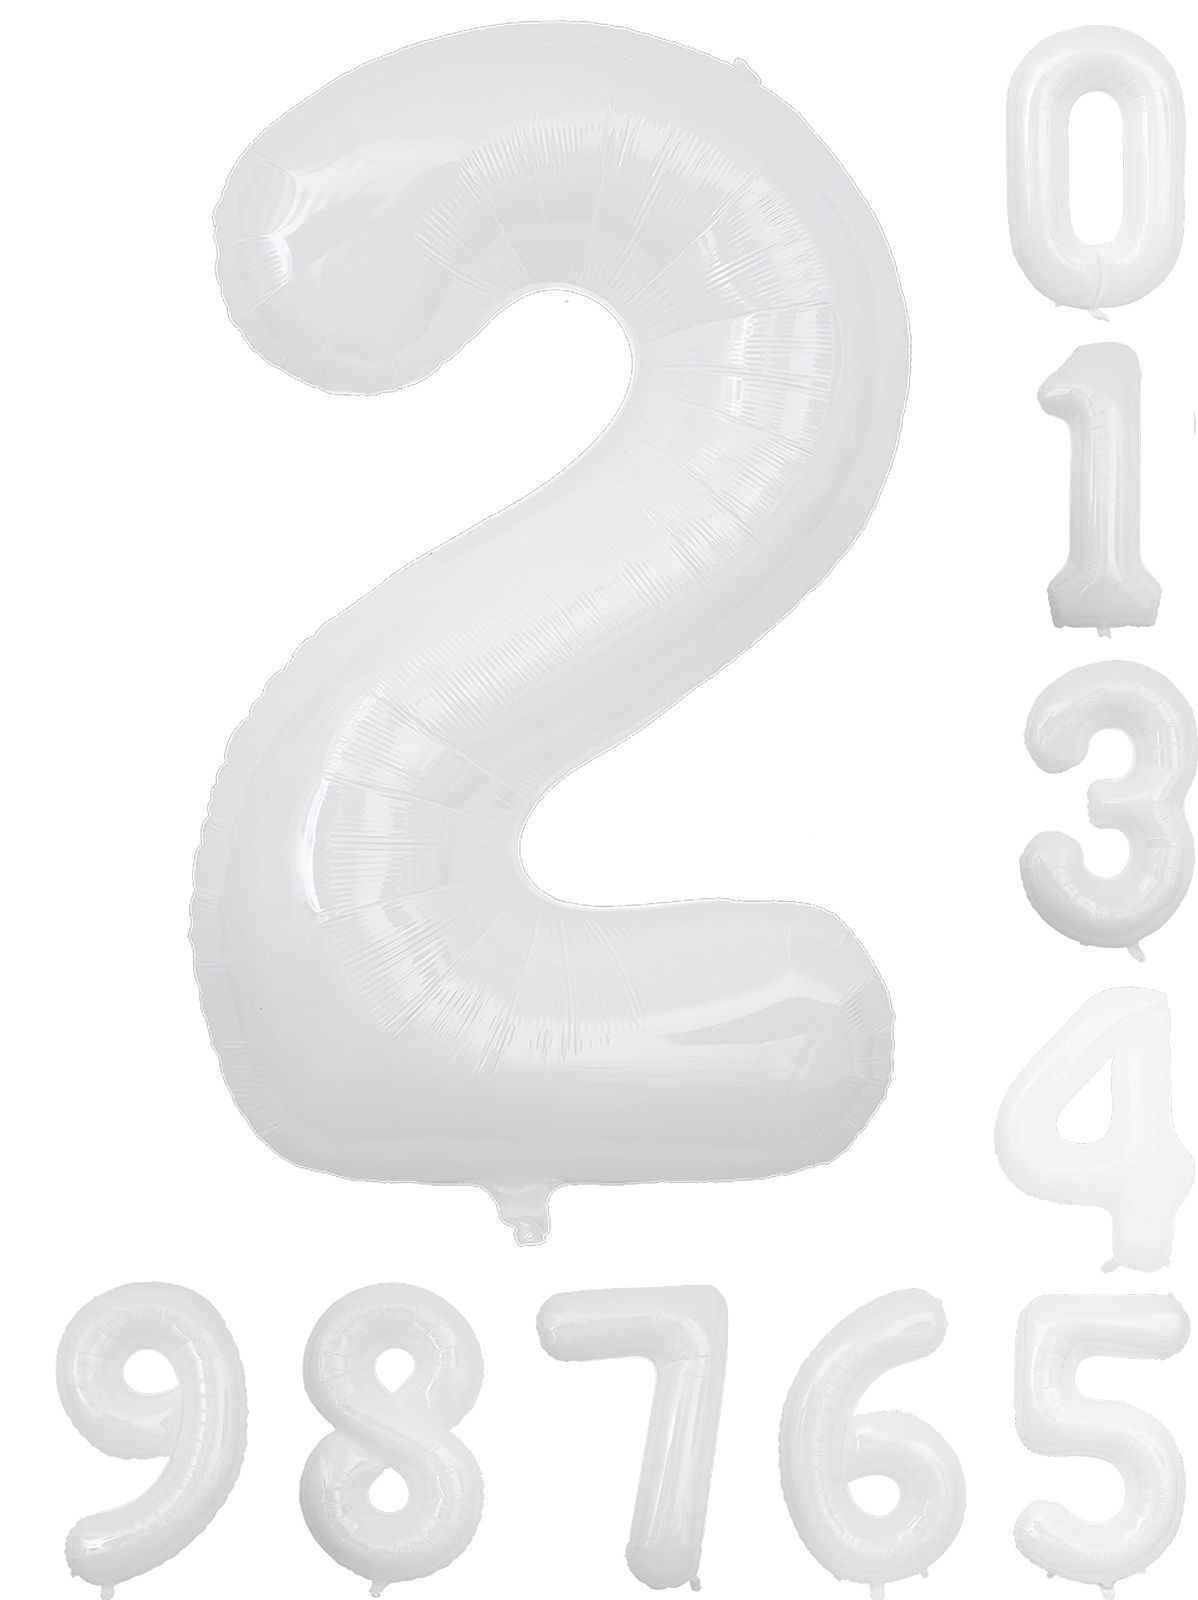 2022春夏新色】 数字 バルーン 大きい 誕生日 飾り 数字風船 数字7 40インチ ホワイト